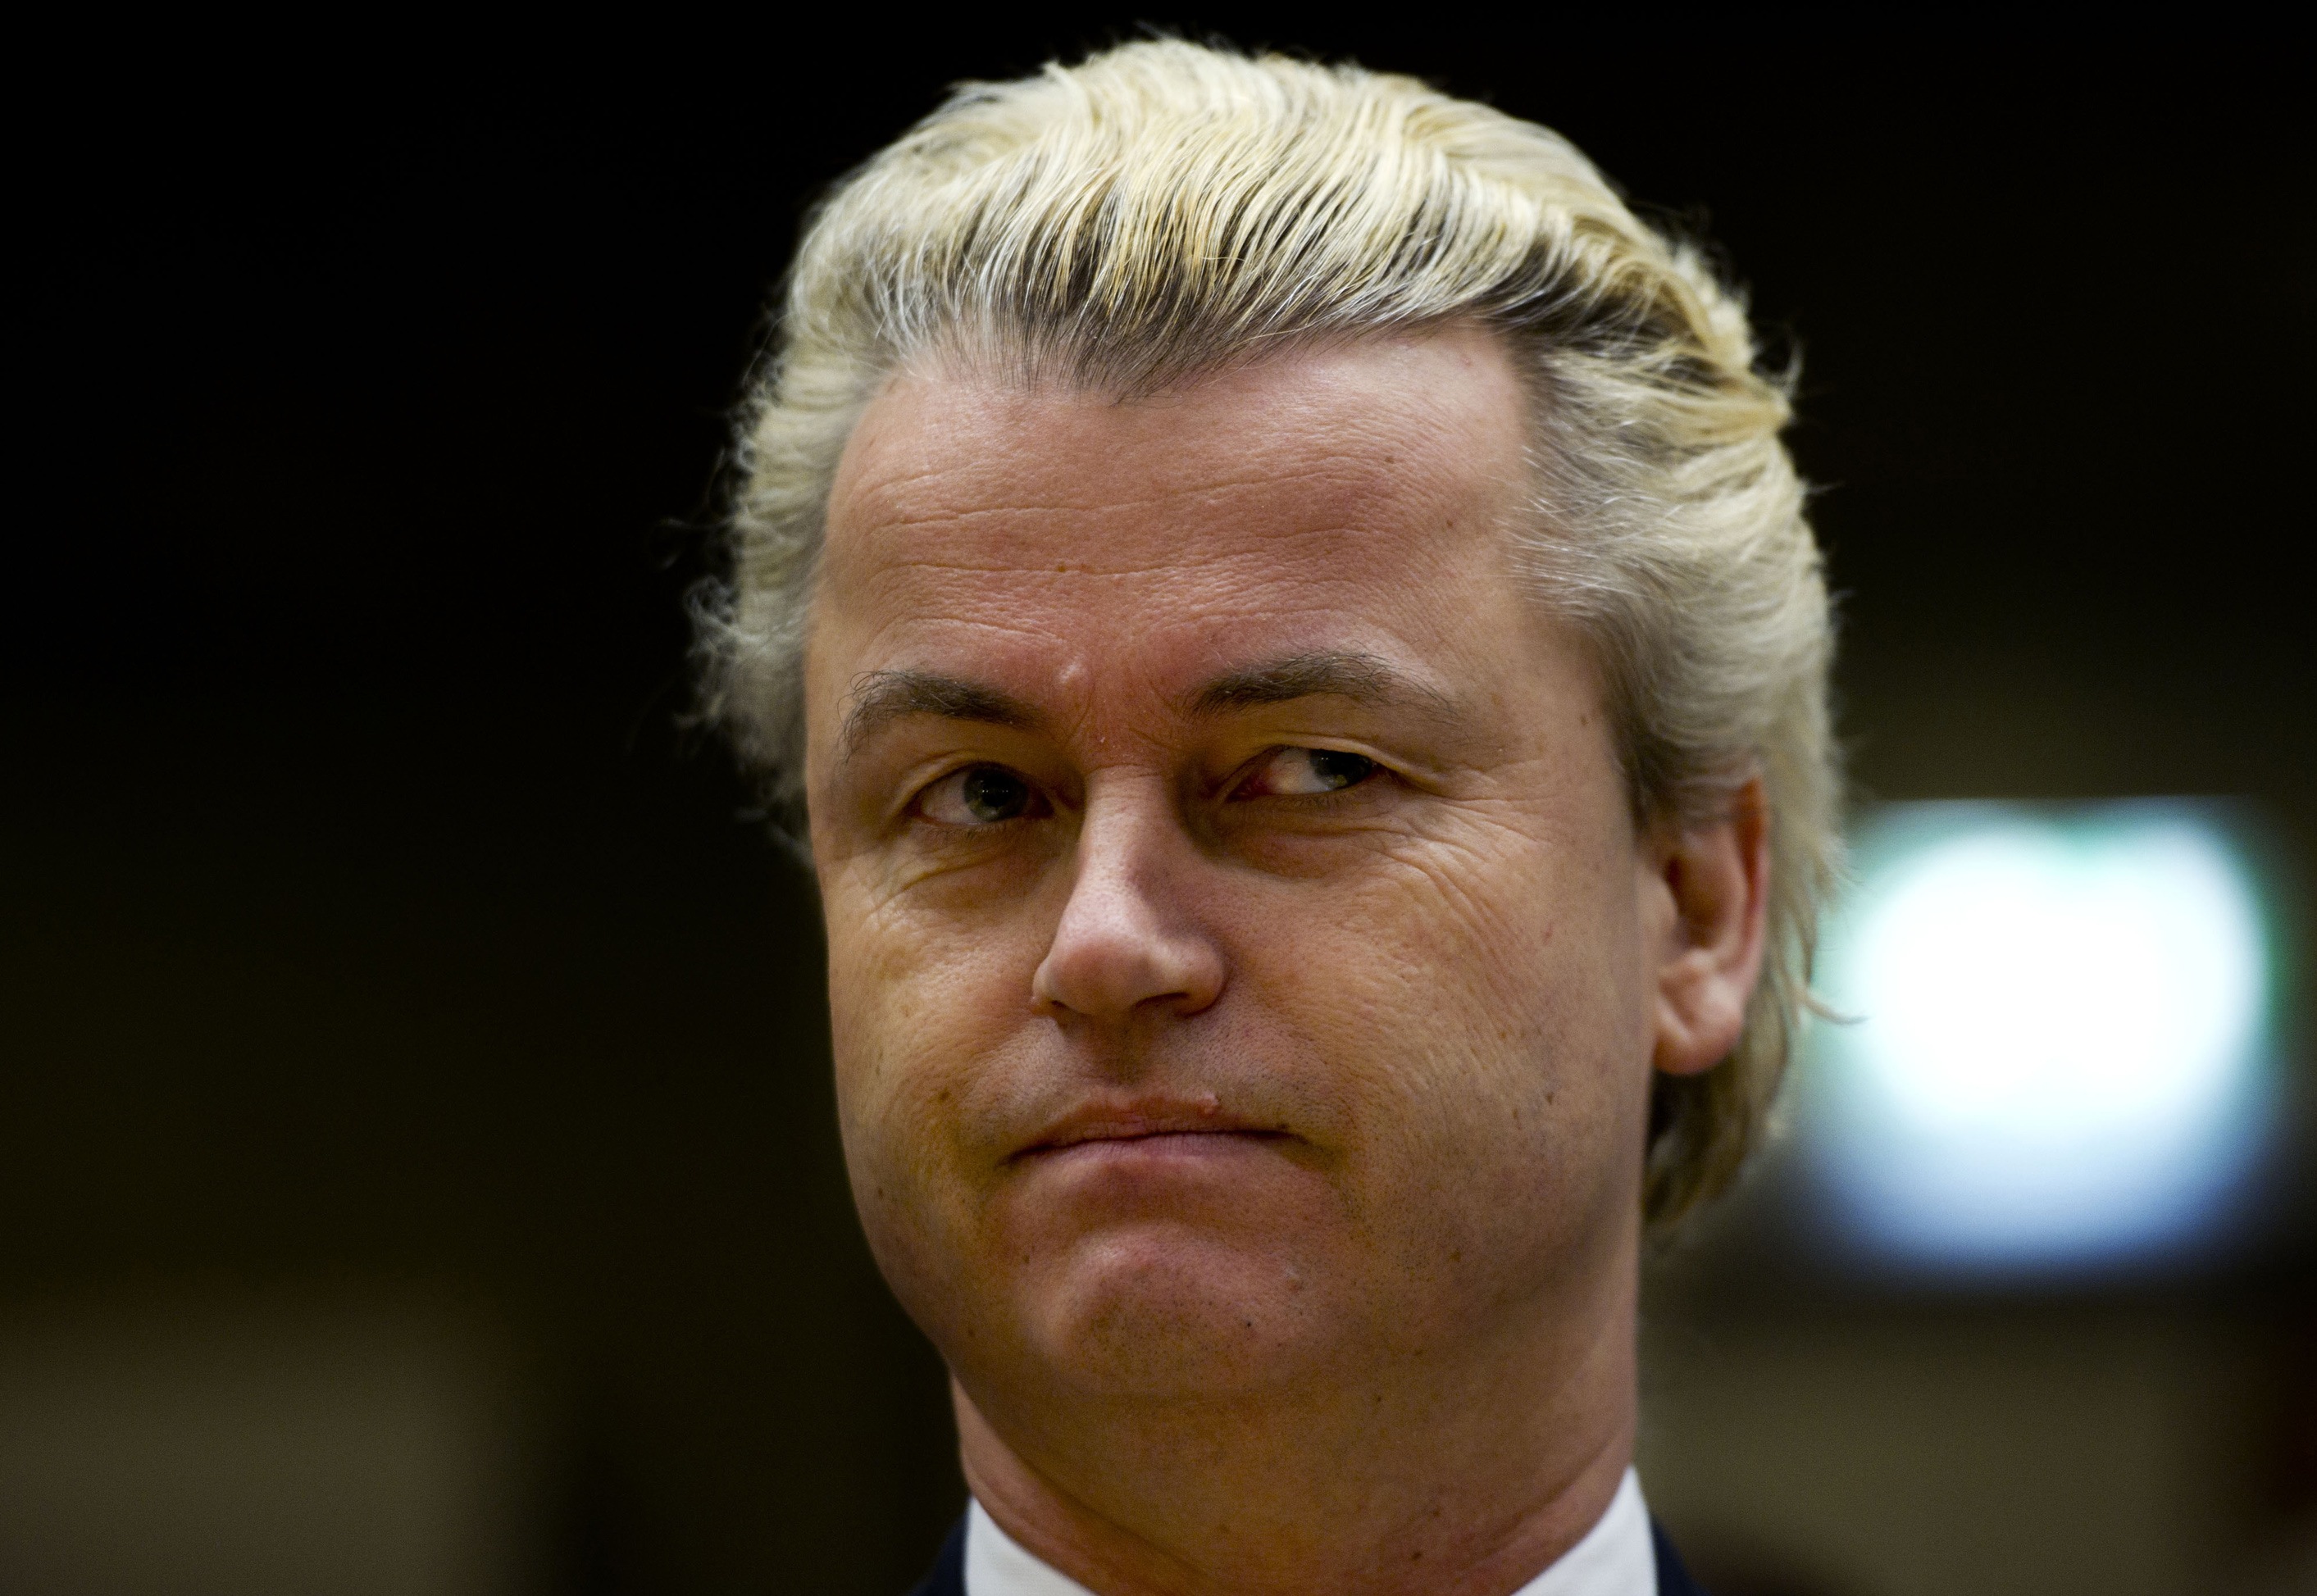 ... Geert Wilders fortsätta. Den holländske politikern står åtalad för hets mot folkgrupp.